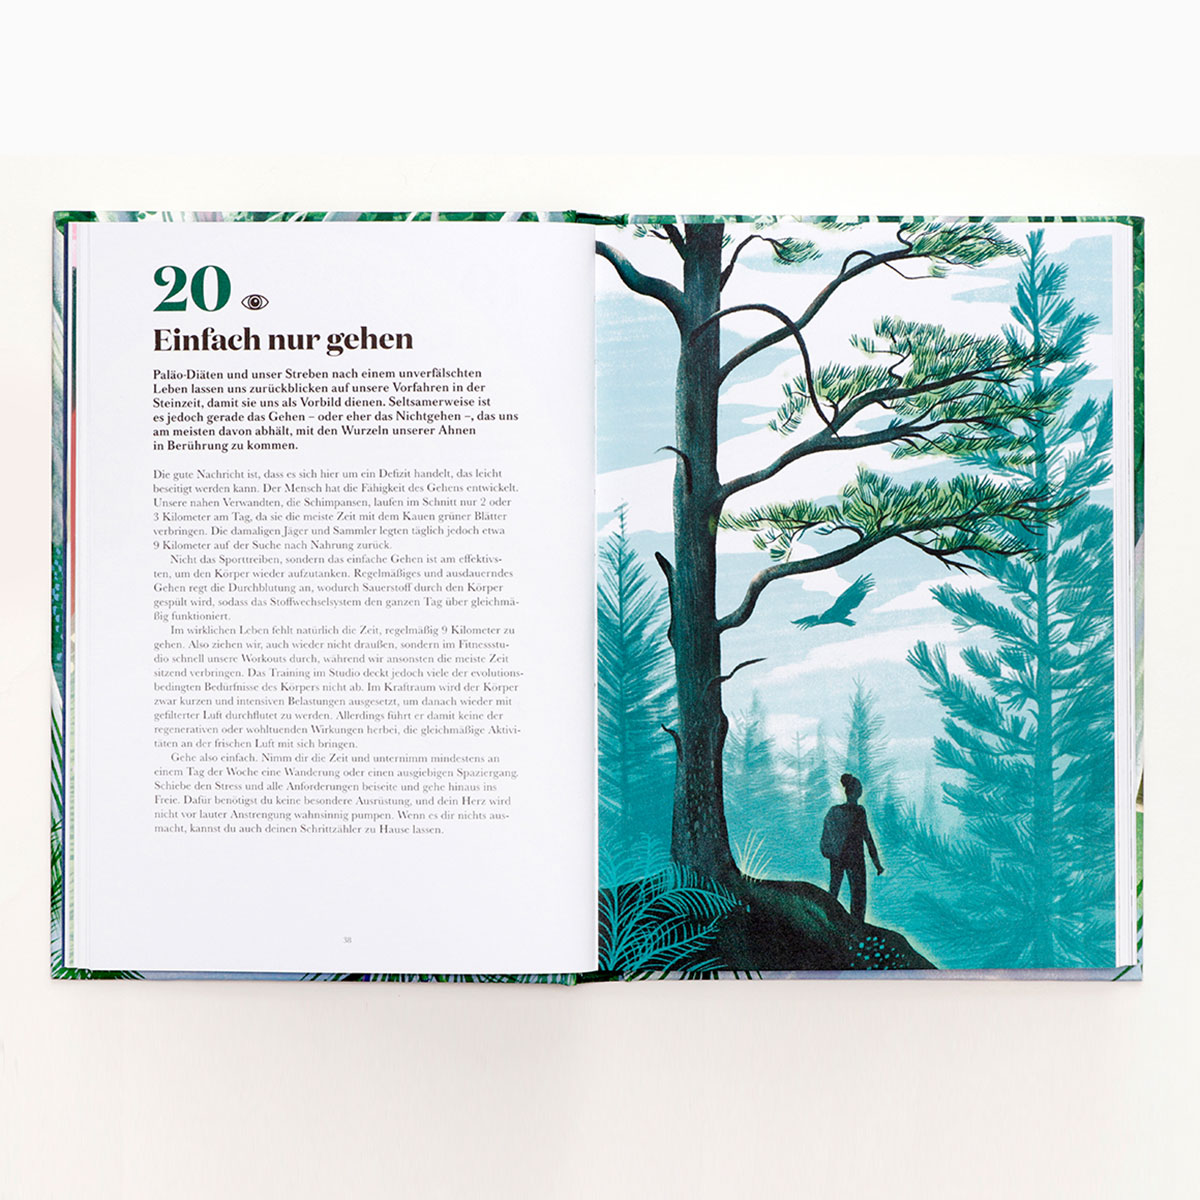 100 Dinge, die du im Wald tun kannst: Buch mit 100 kreativen Ideen, die man im Wald machen kann